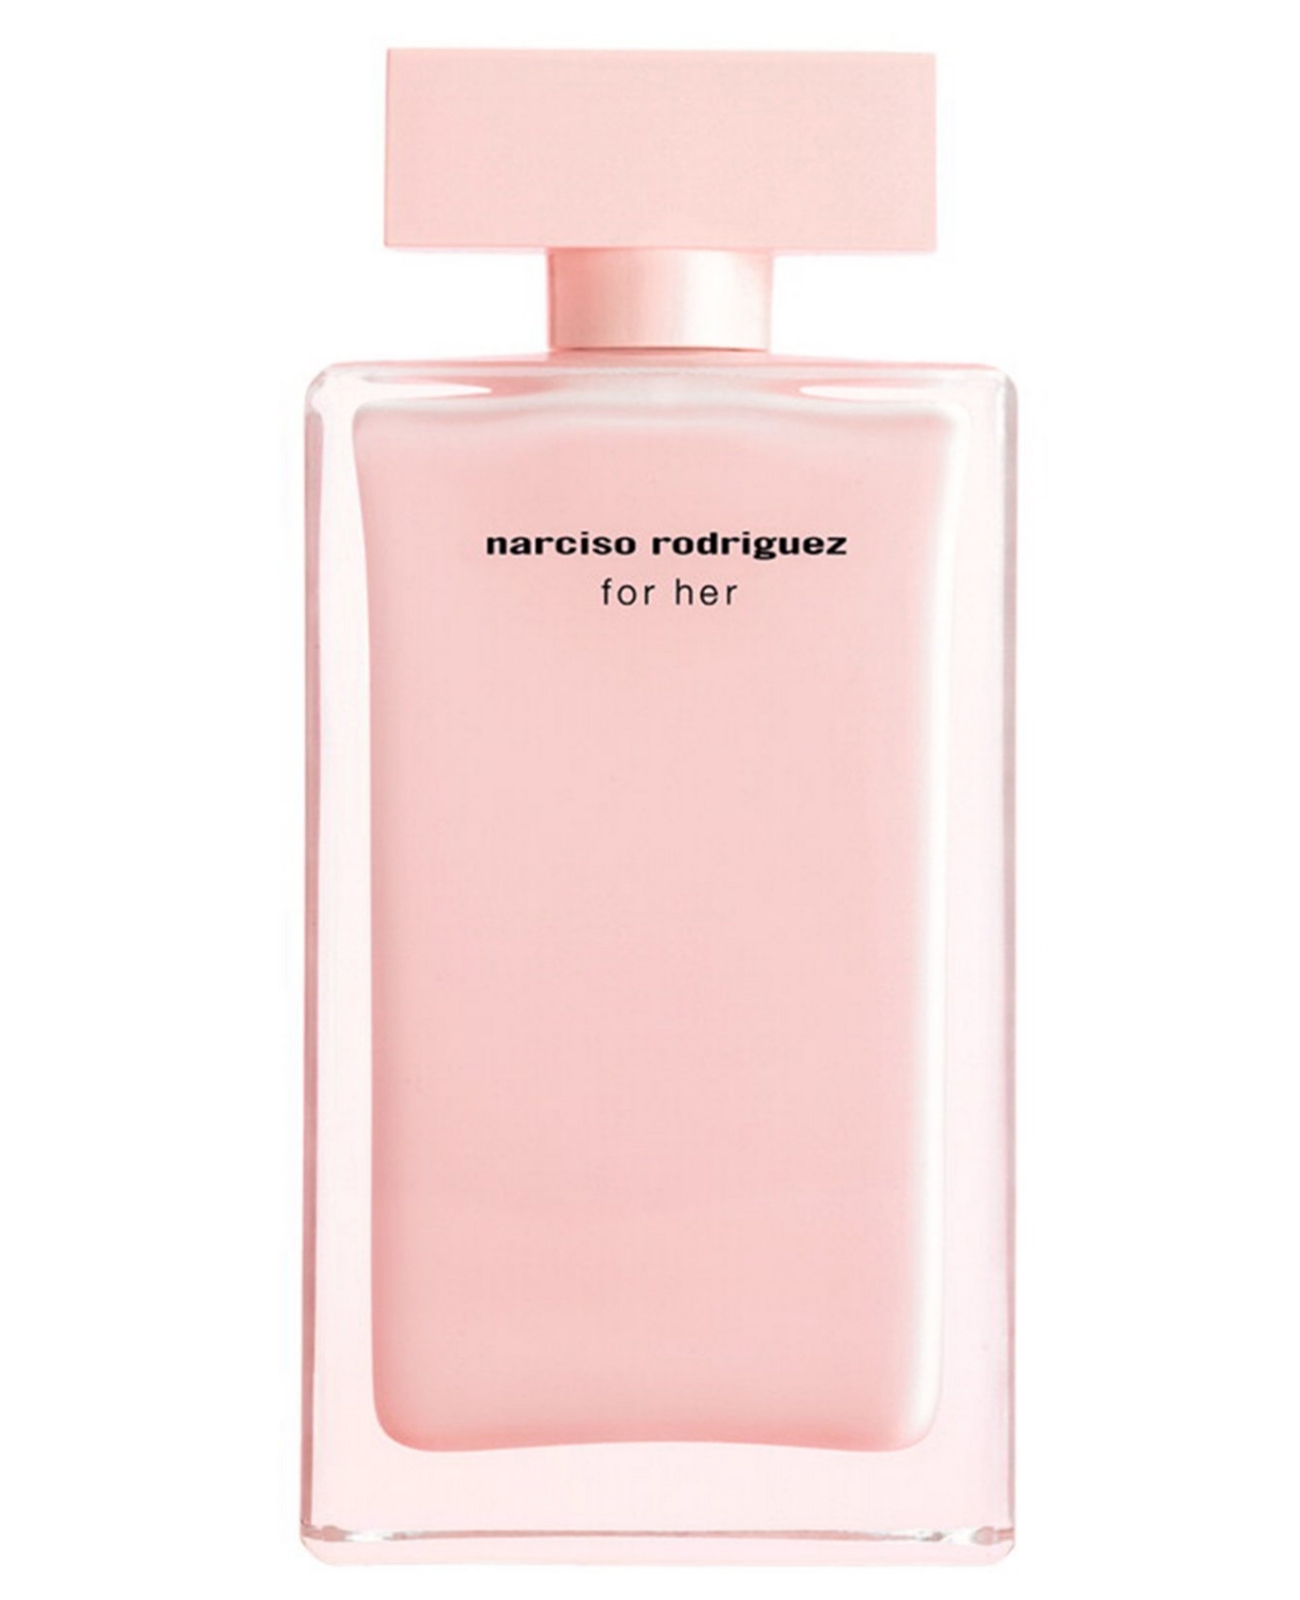 For Her Eau de Parfum de Narciso Rodriguez.